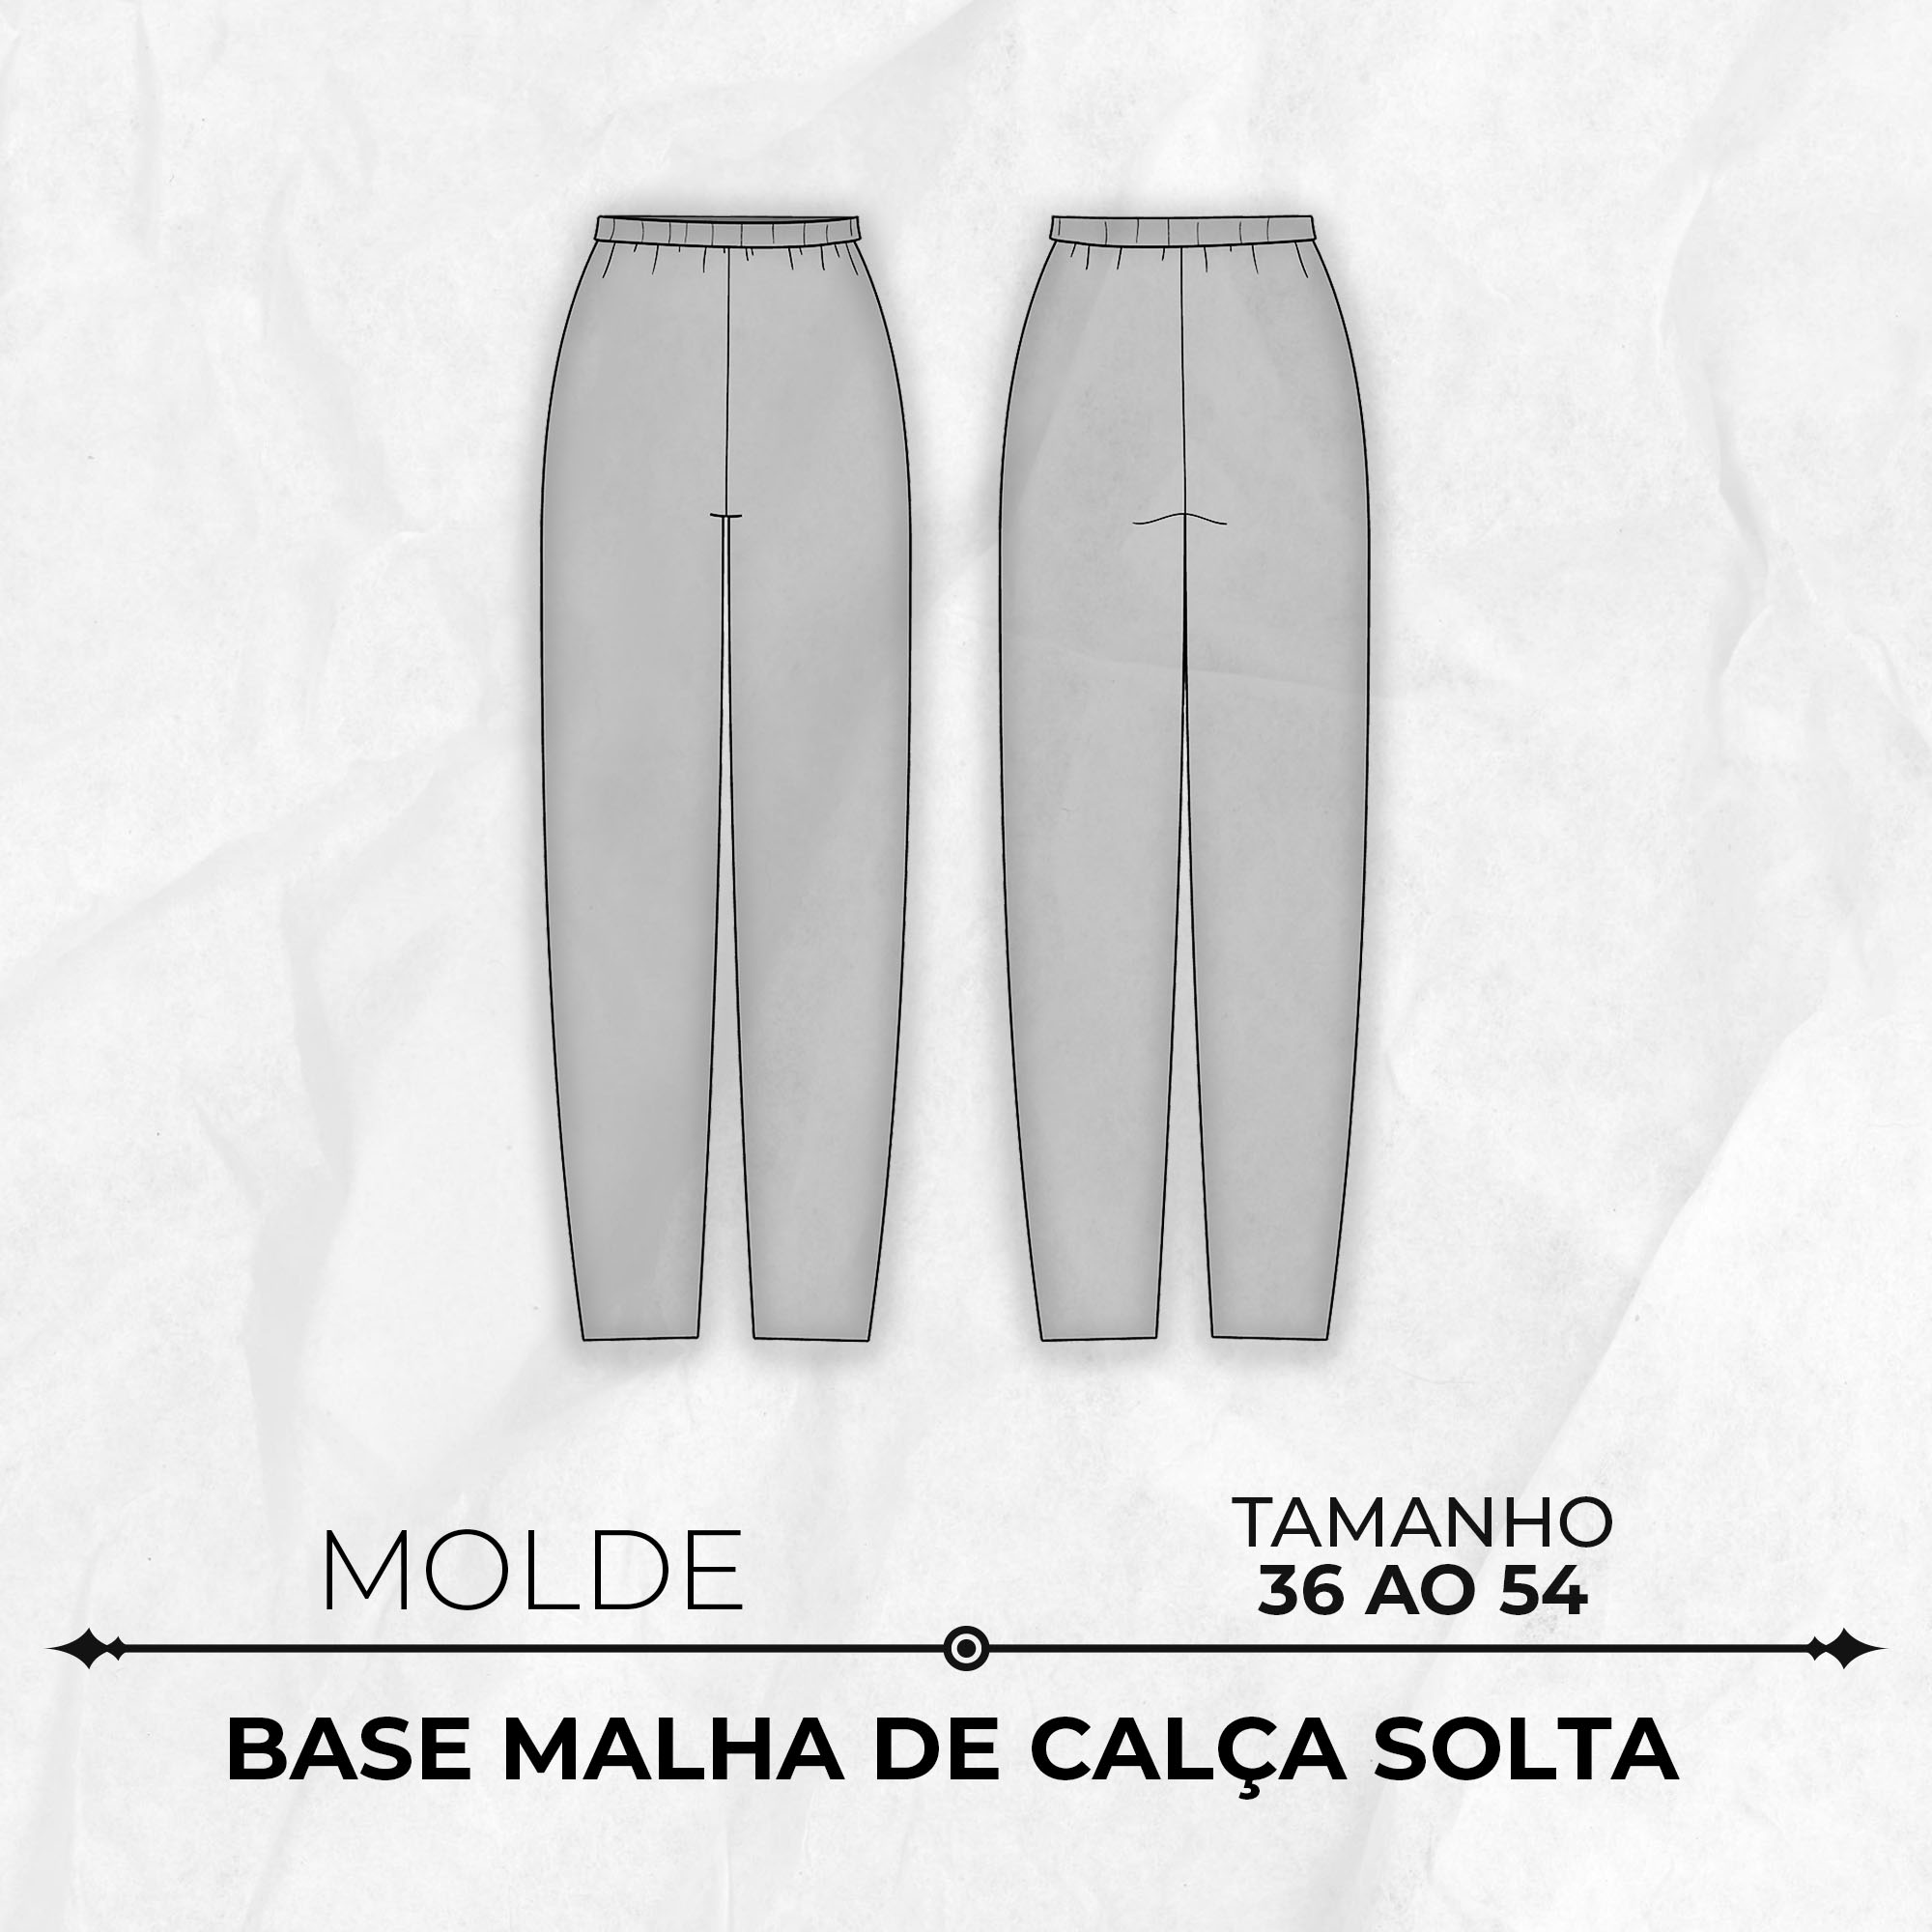 Molde base malha de calça feminina solta tamanho 36 ao 54 by  Wania Machado